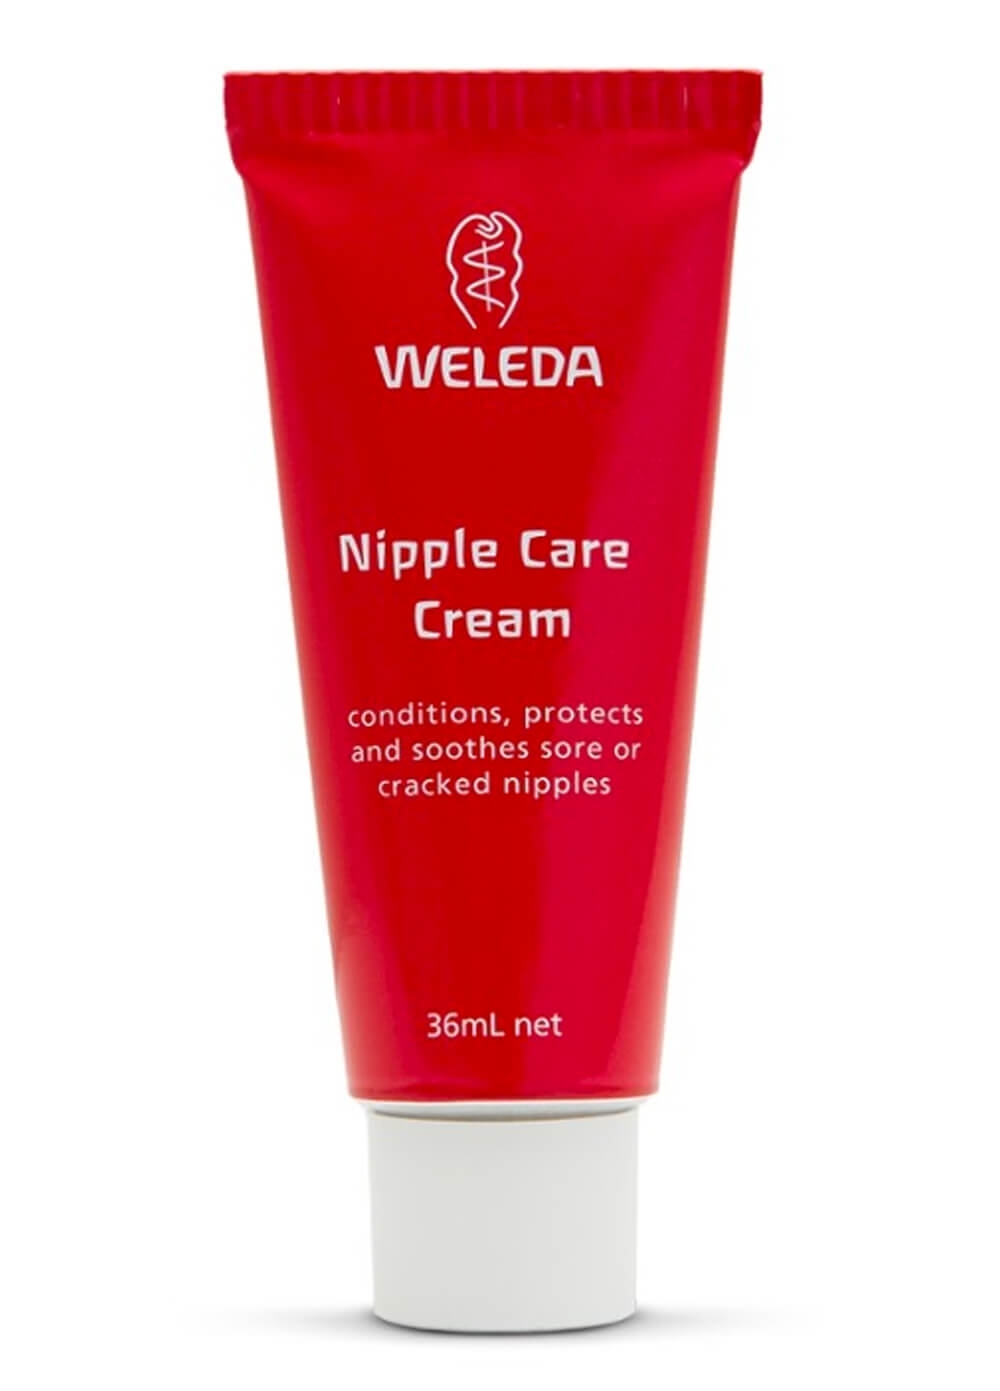 Weleda - Nipple Care Cream 36ml | Queen Bee